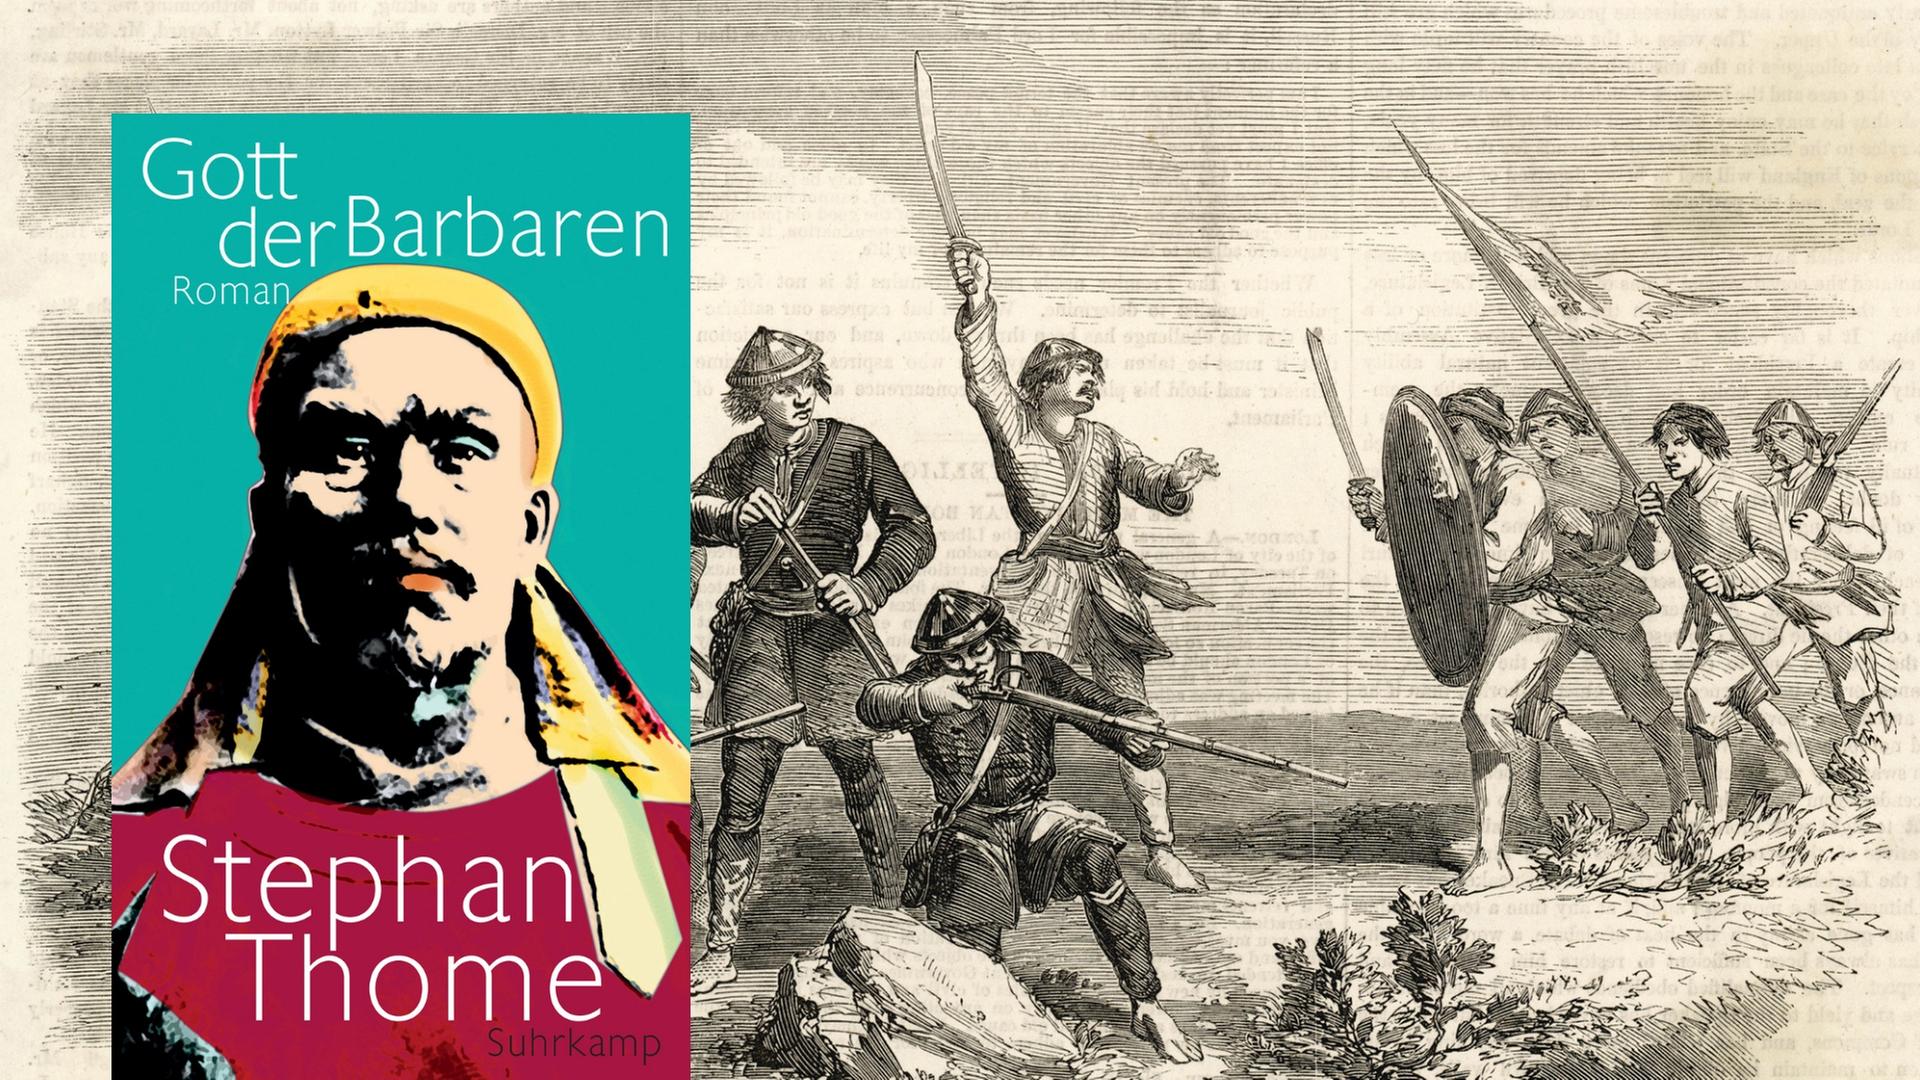 Buchcover: Stephan Thome: "Gott der Barbaren" und sogenannte Taiping-Rebellen im Jahr 1857